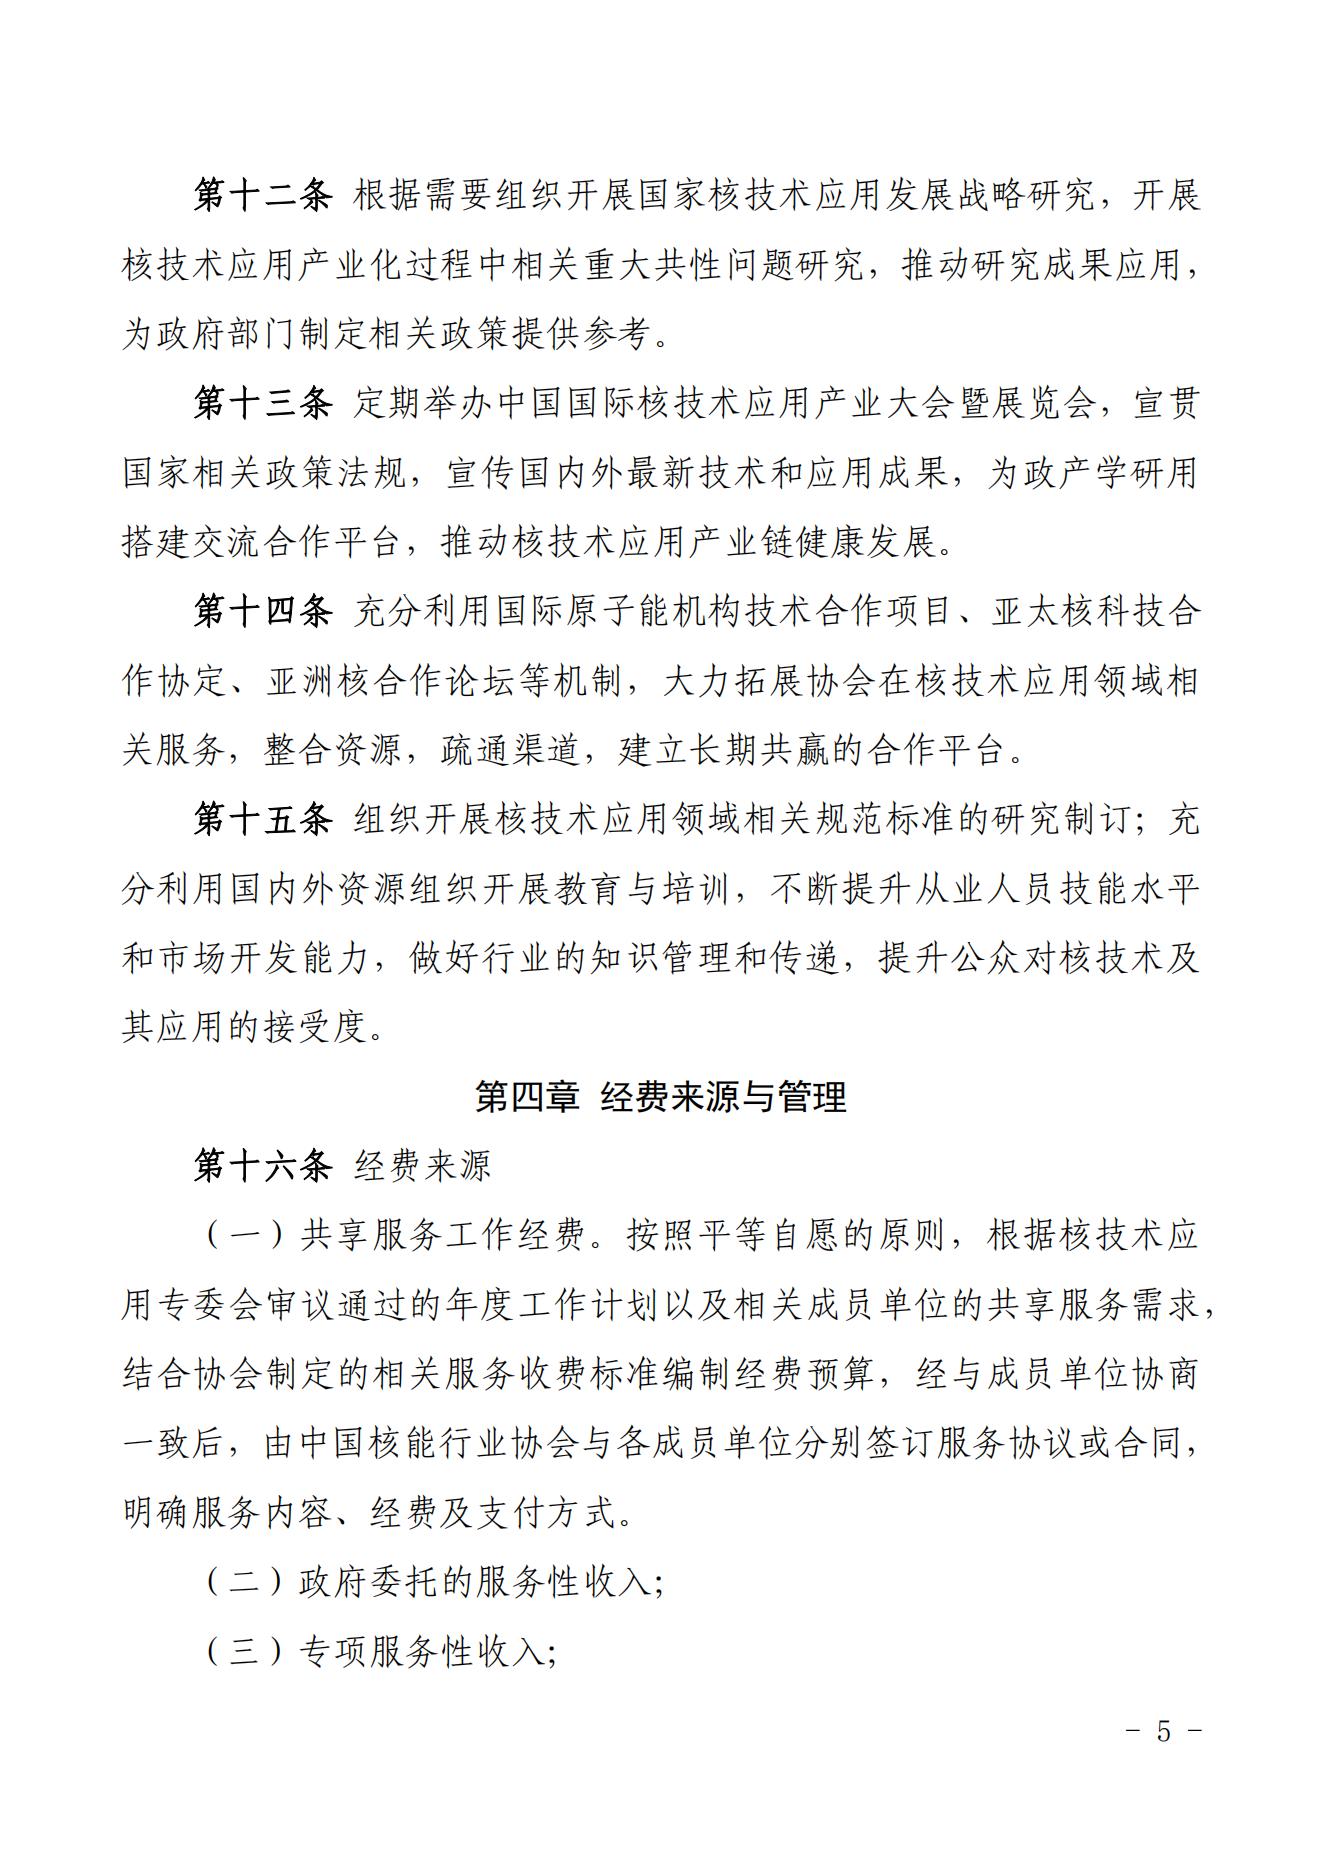 关于印发《中国核能行业协会核技术应用专业委员会管理办法》的通知-核协外发[2021]742号_04.jpg